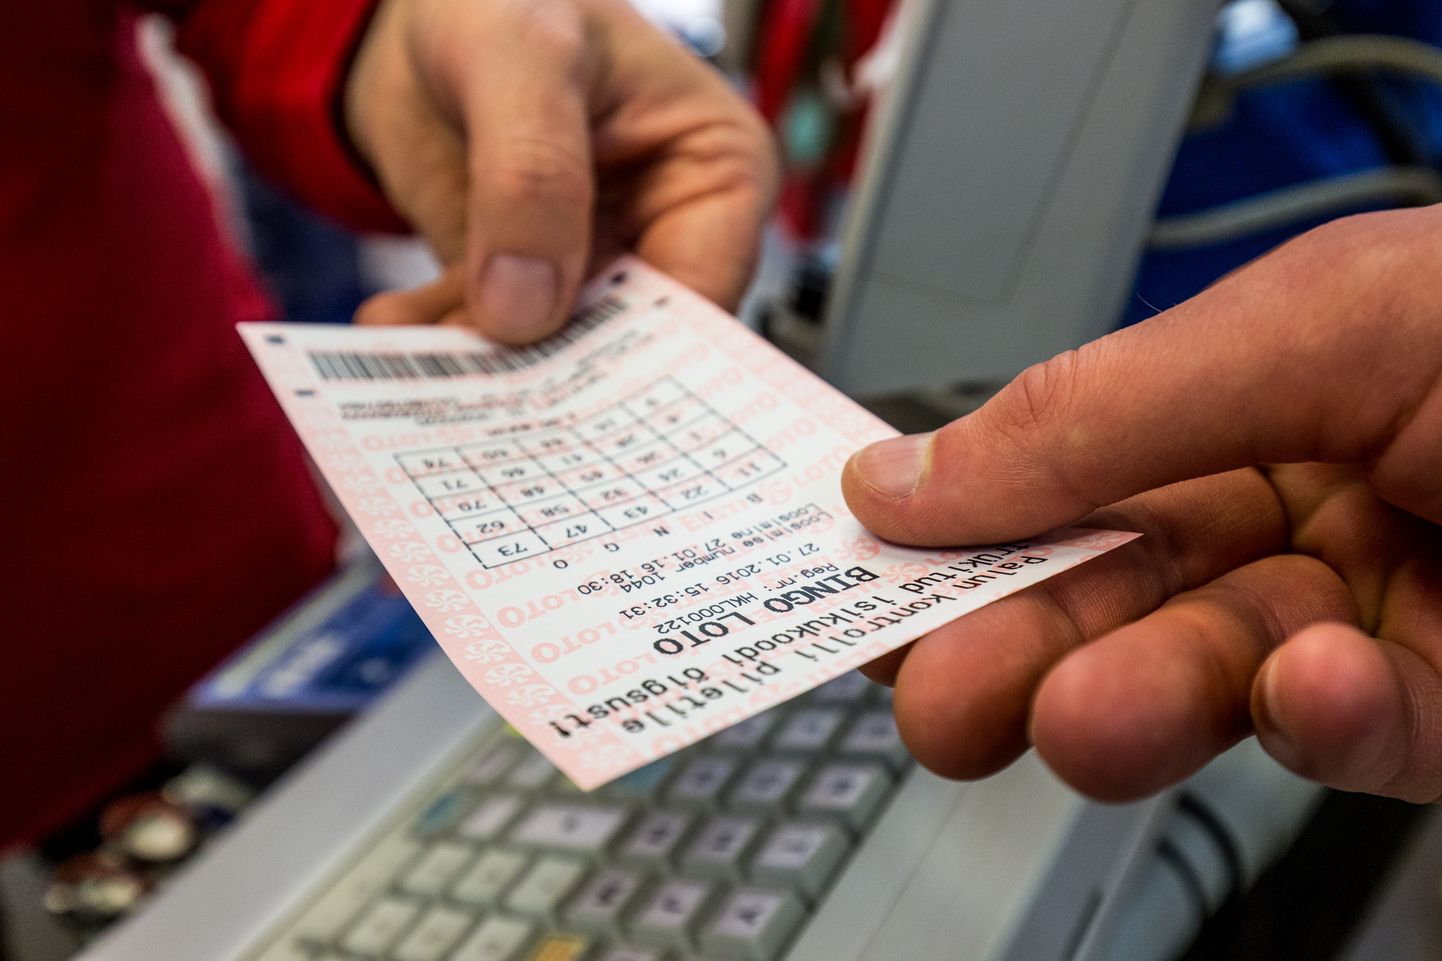 Eelmisel aastal tõi kõige suurema lotovõidu Viljandimaale Bingo loto mäng. Võidusummaks oli 24 052 eurot 60 senti.